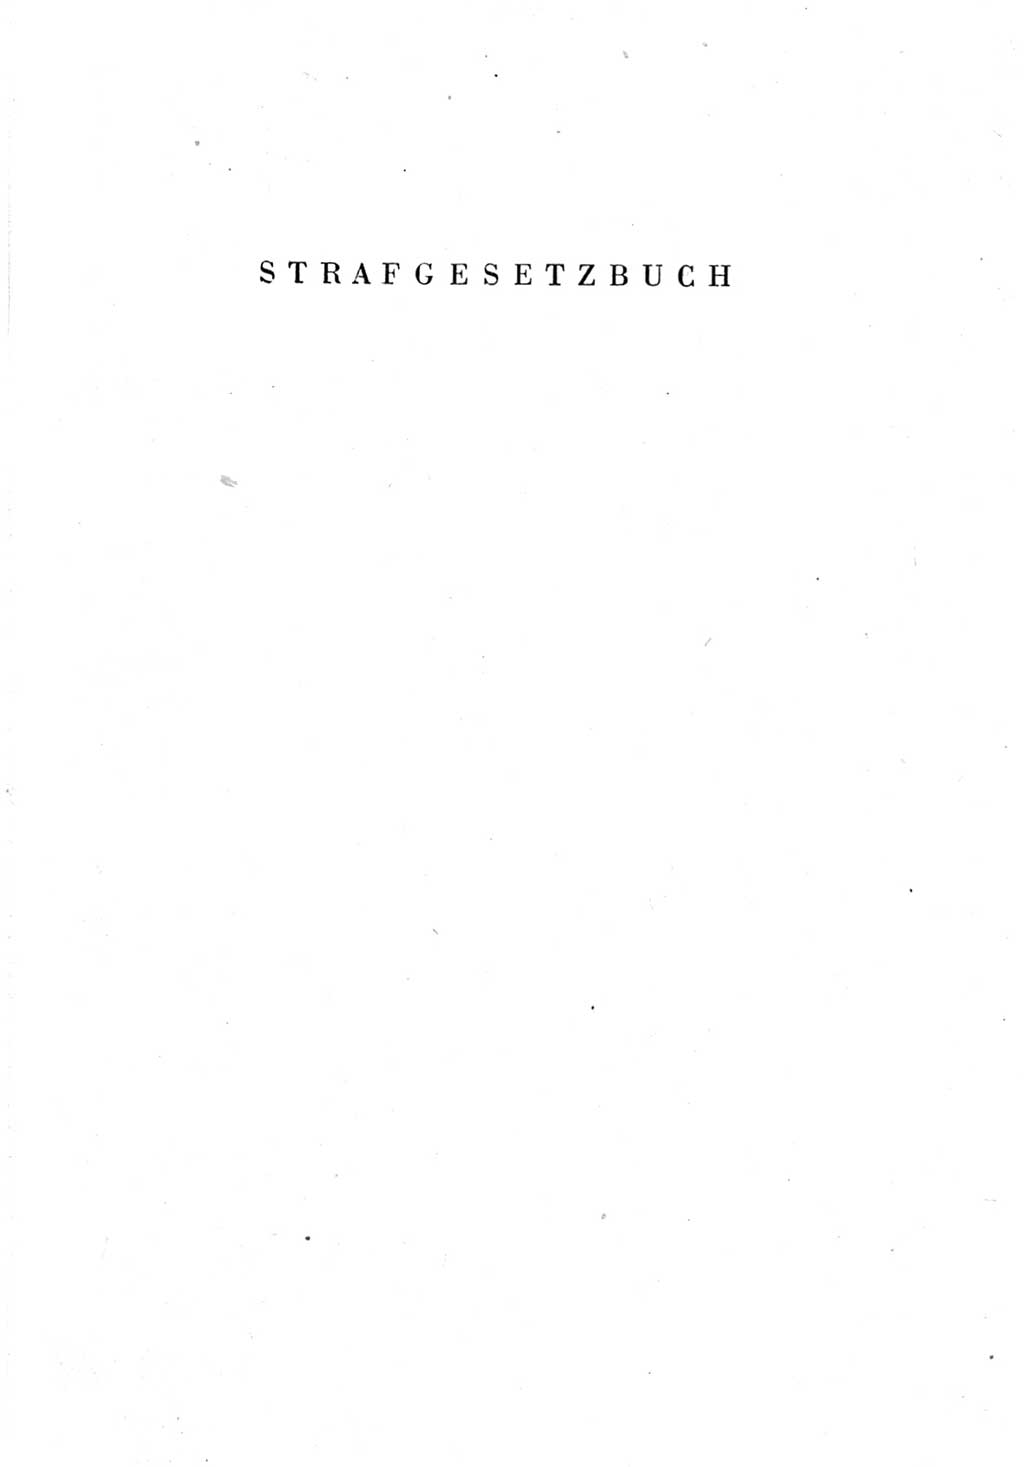 Strafgesetzbuch (StGB) und andere Strafgesetze [Deutsche Demokratische Republik (DDR)] 1951, Seite 1 (StGB Strafges. DDR 1951, S. 1)